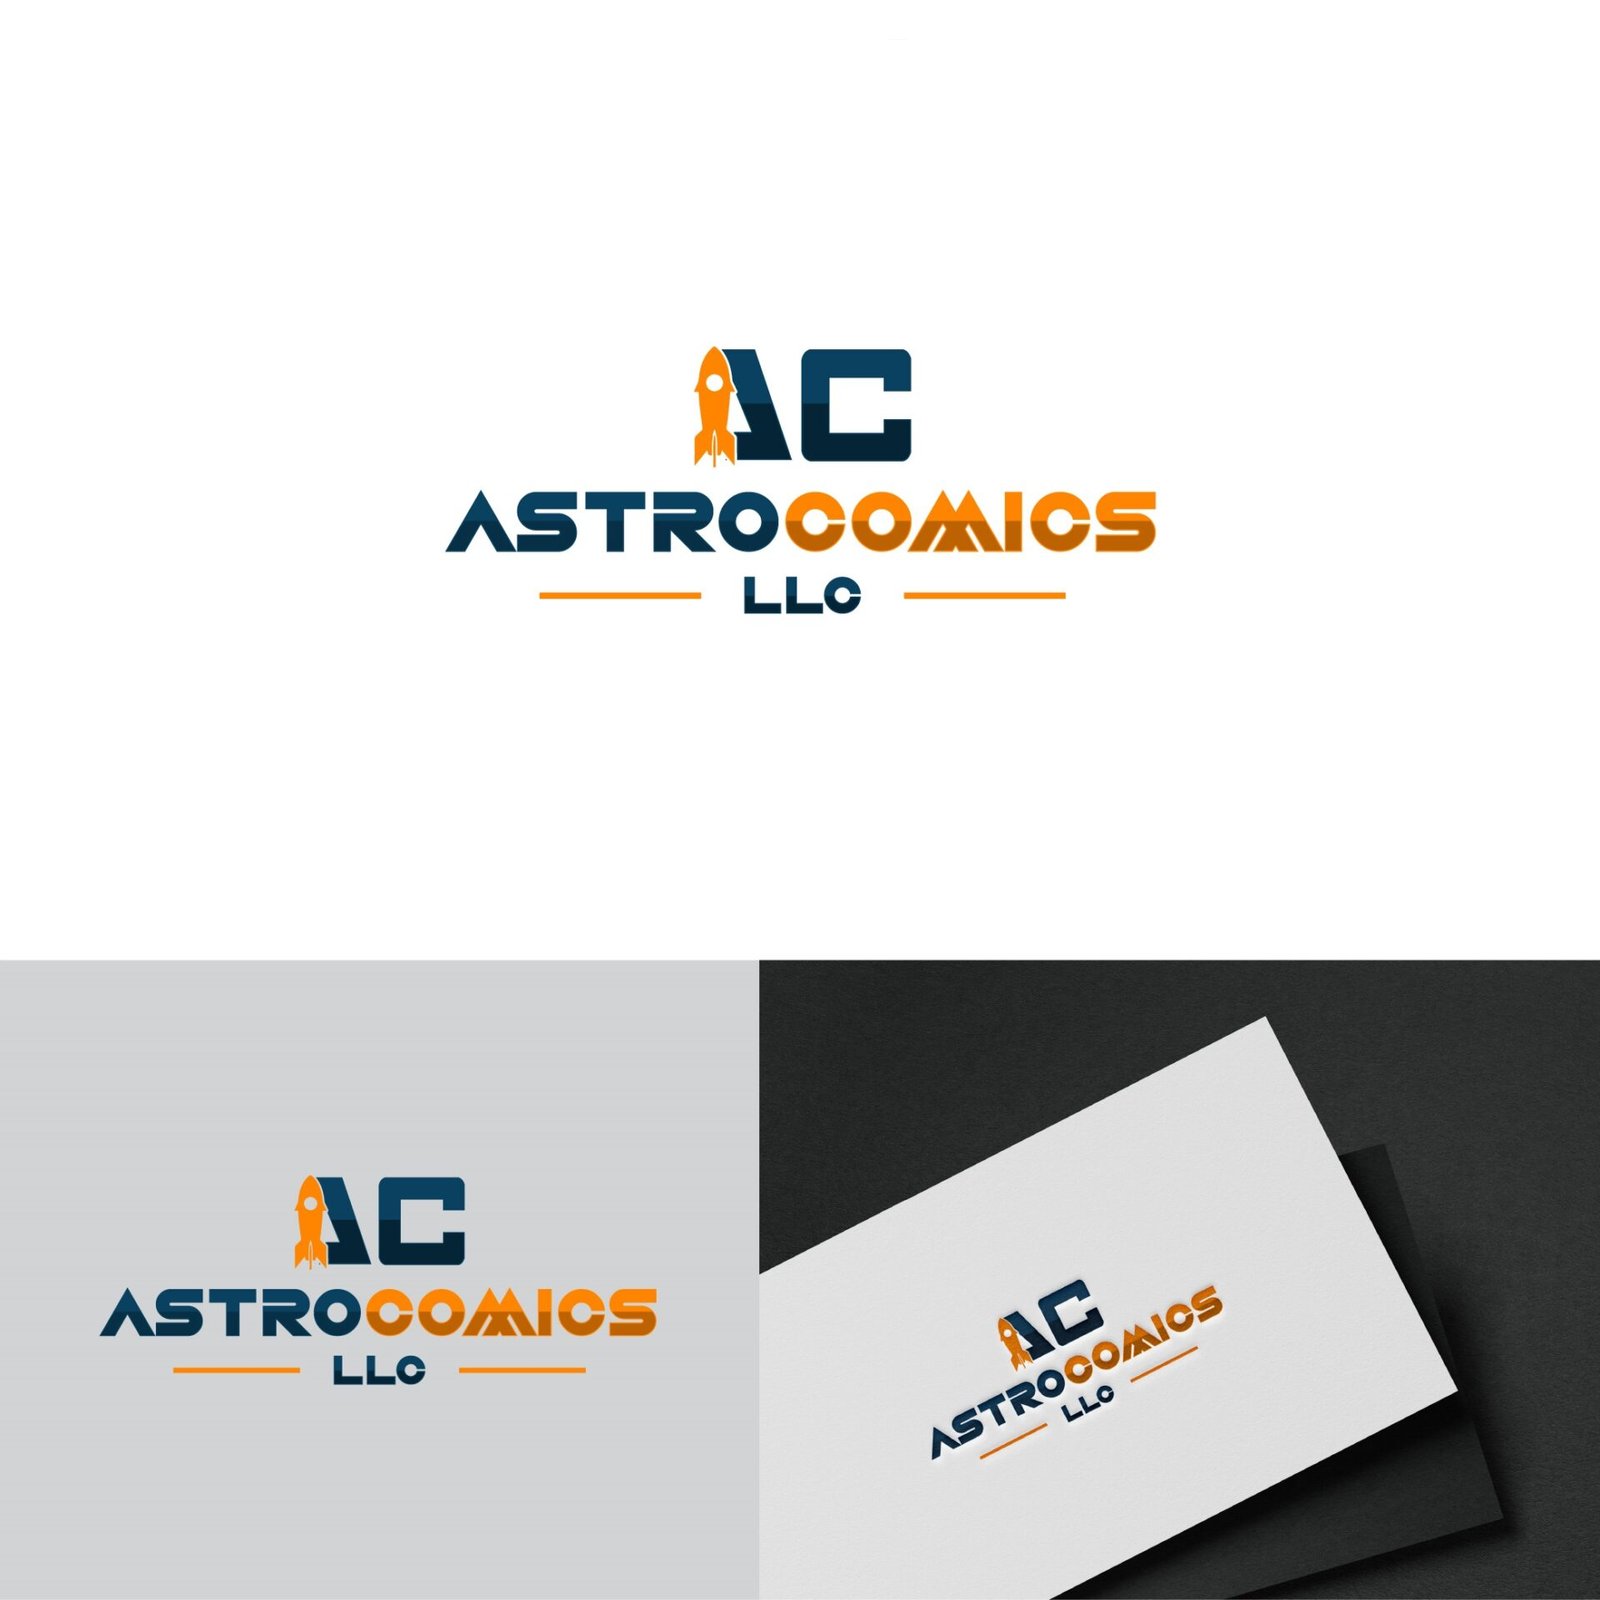 Astro Comics - A comic company logo